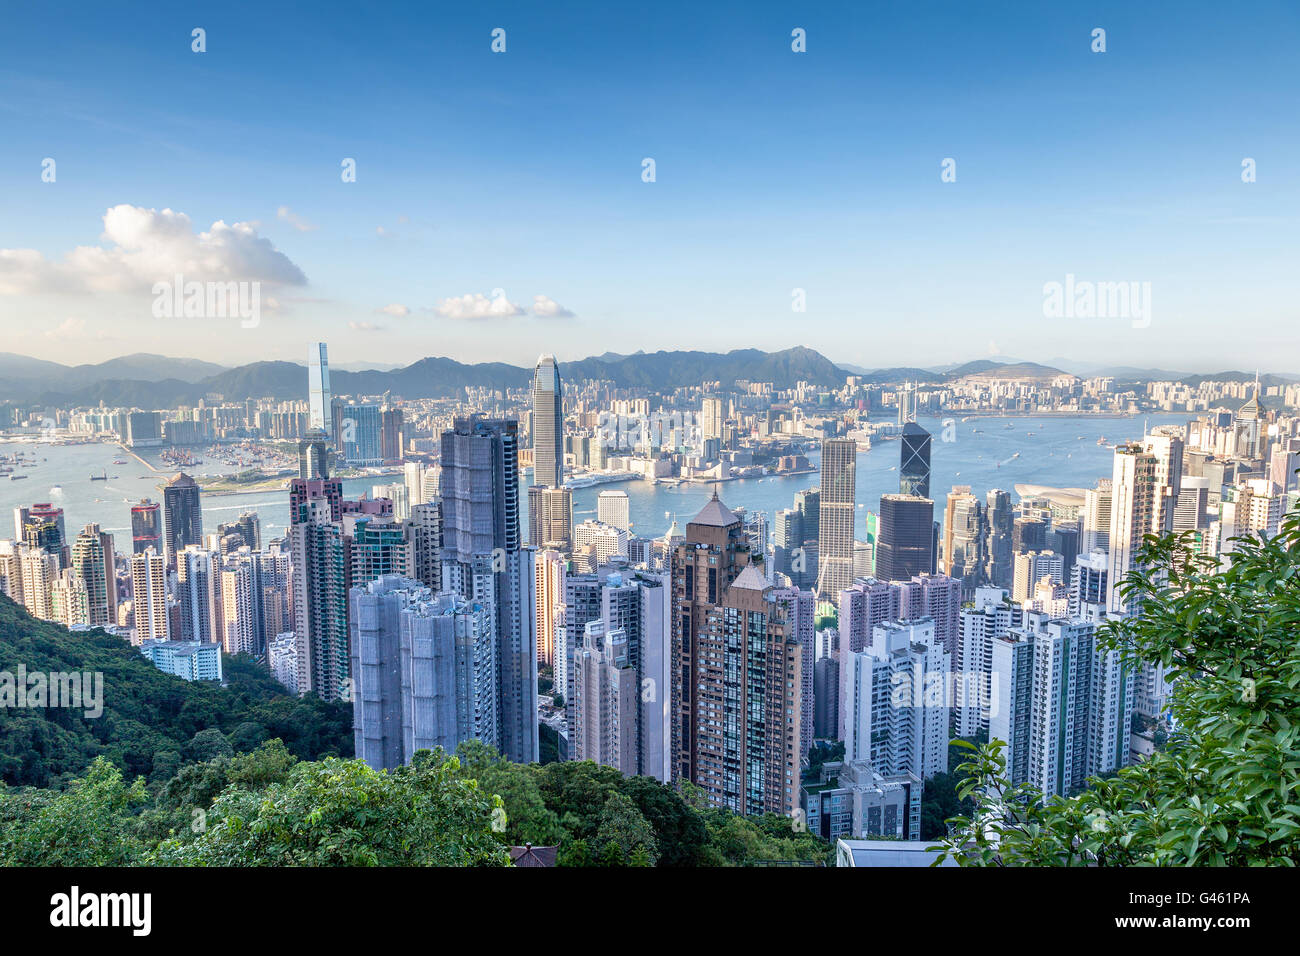 Luftaufnahme des Victoria Harbour auf Victoria Peak aus gesehen. Dies ist Hong Kong berühmten Bankenviertel Innenstadt. Stockfoto